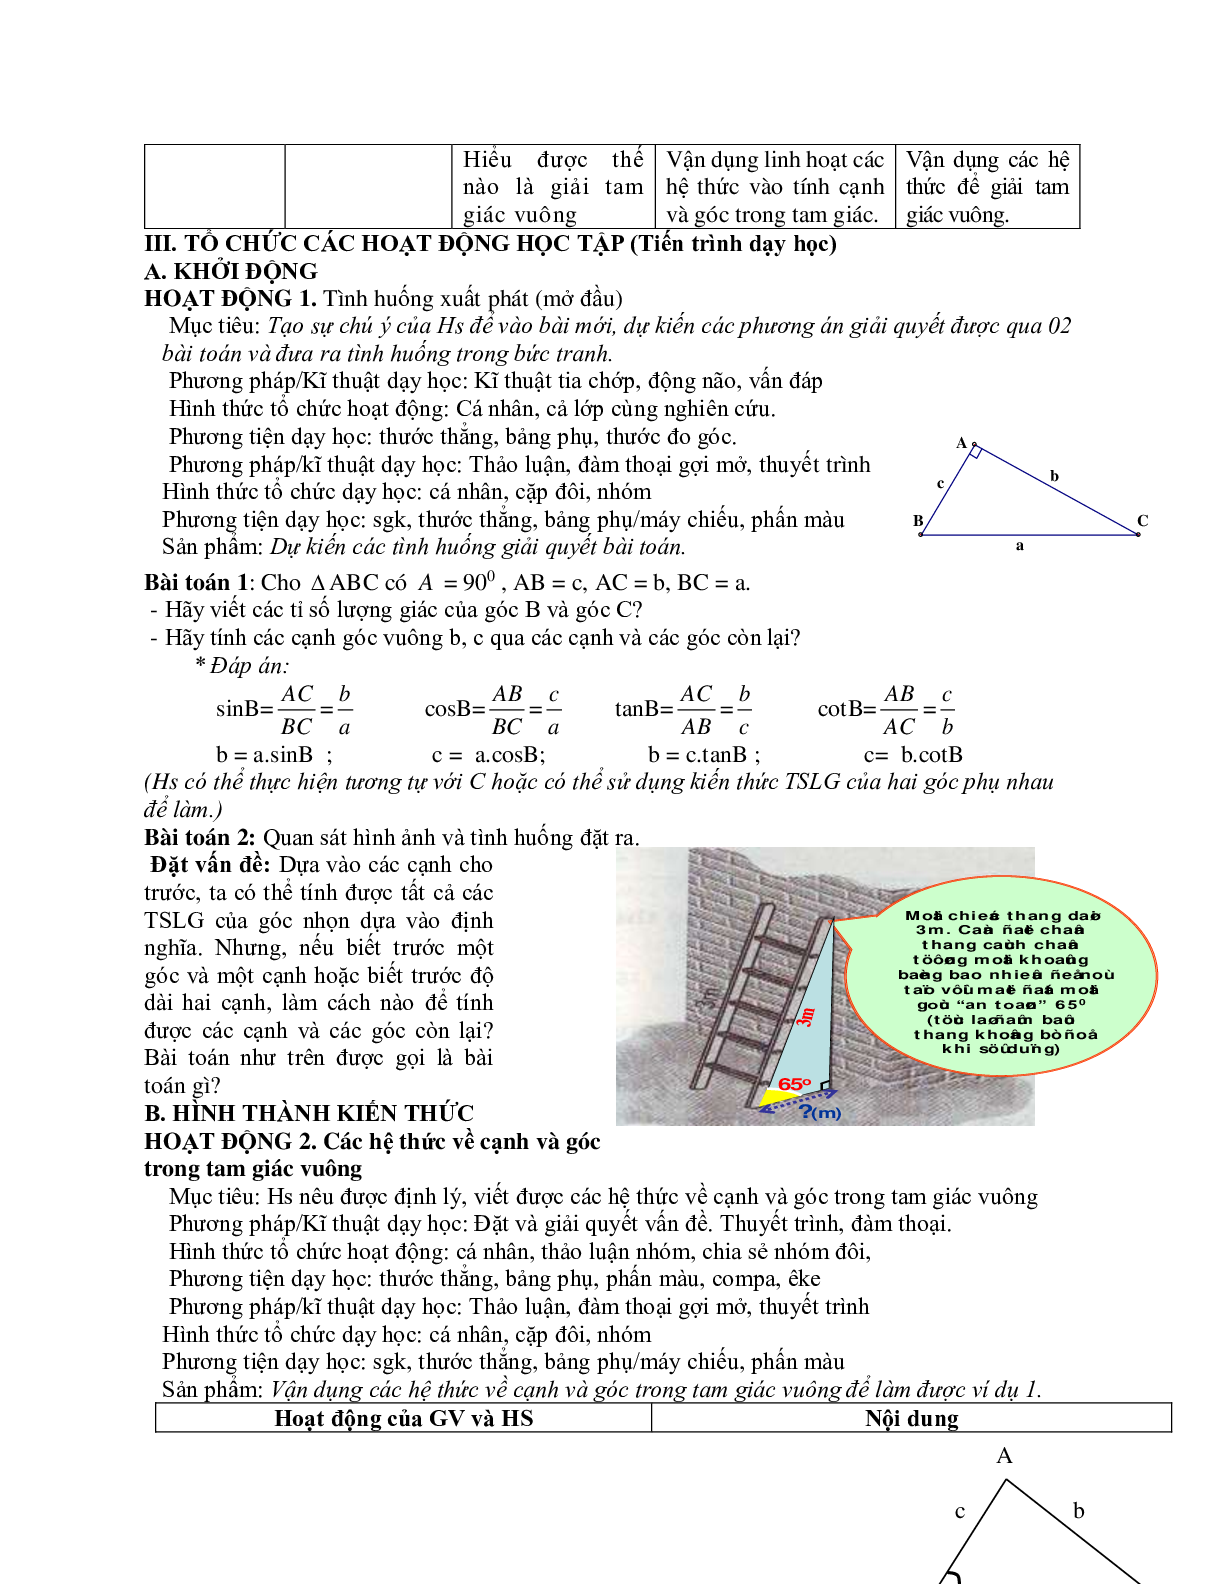 Giáo án Hình học 9 chương 1 bài 4: Một số hệ thức về cạnh và góc trong tam giác vuông mới nhất (trang 2)